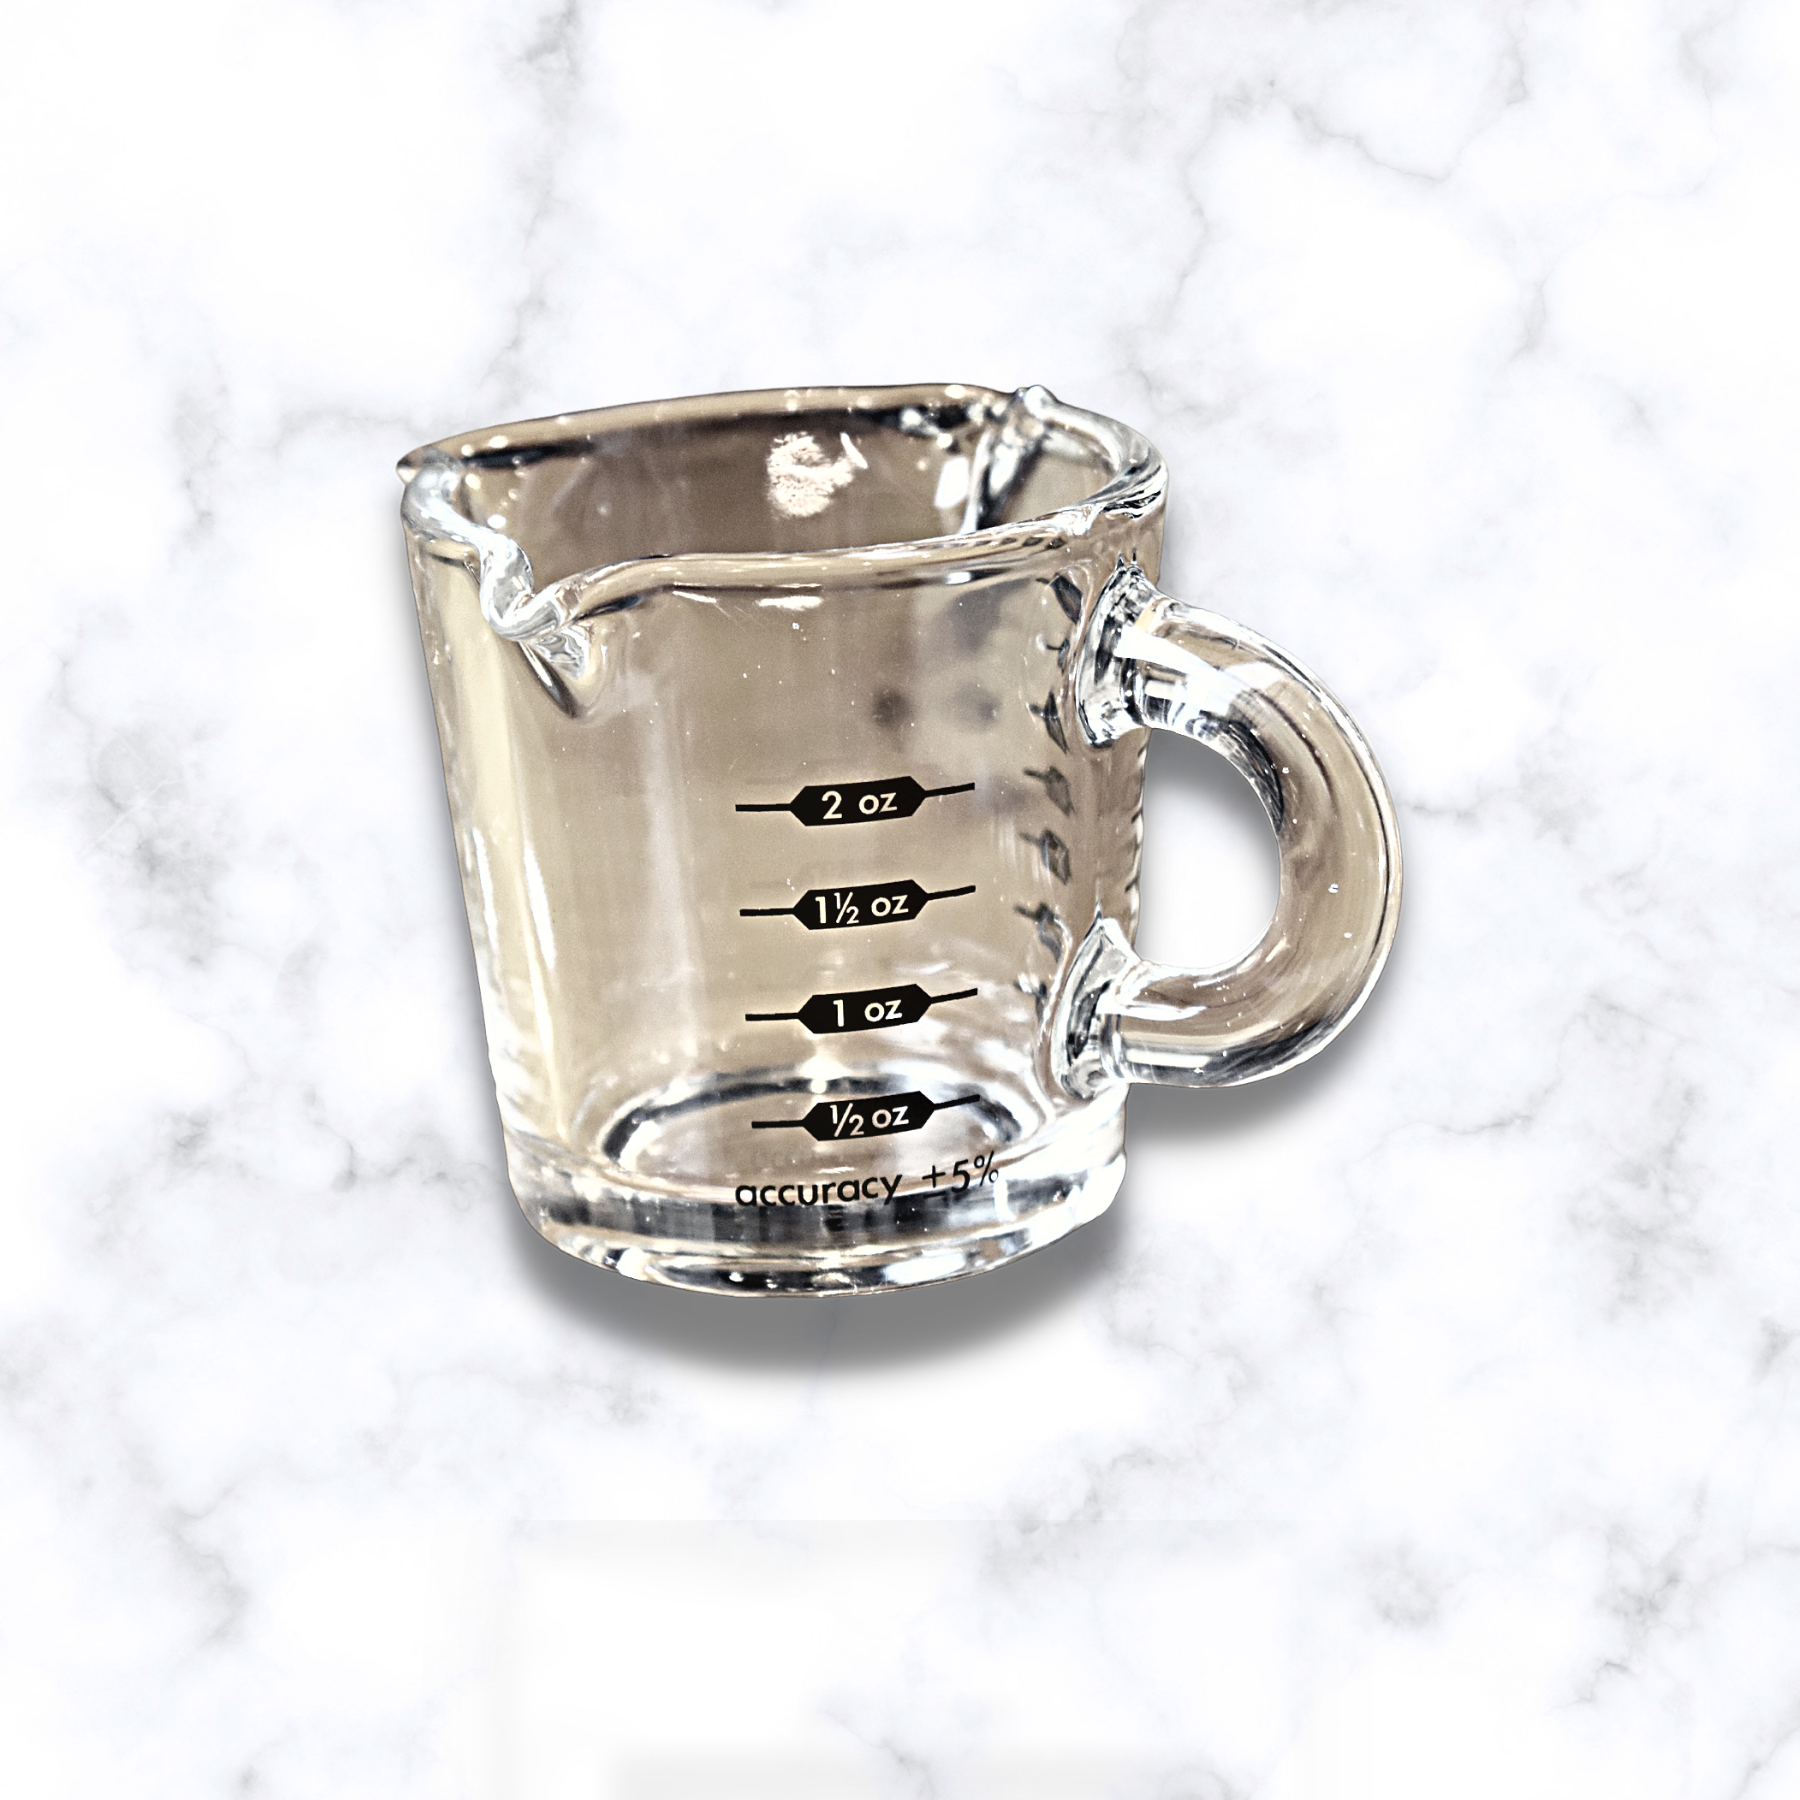 3oz Shot Glass w/ Spout – True Stone Coffee Roasters